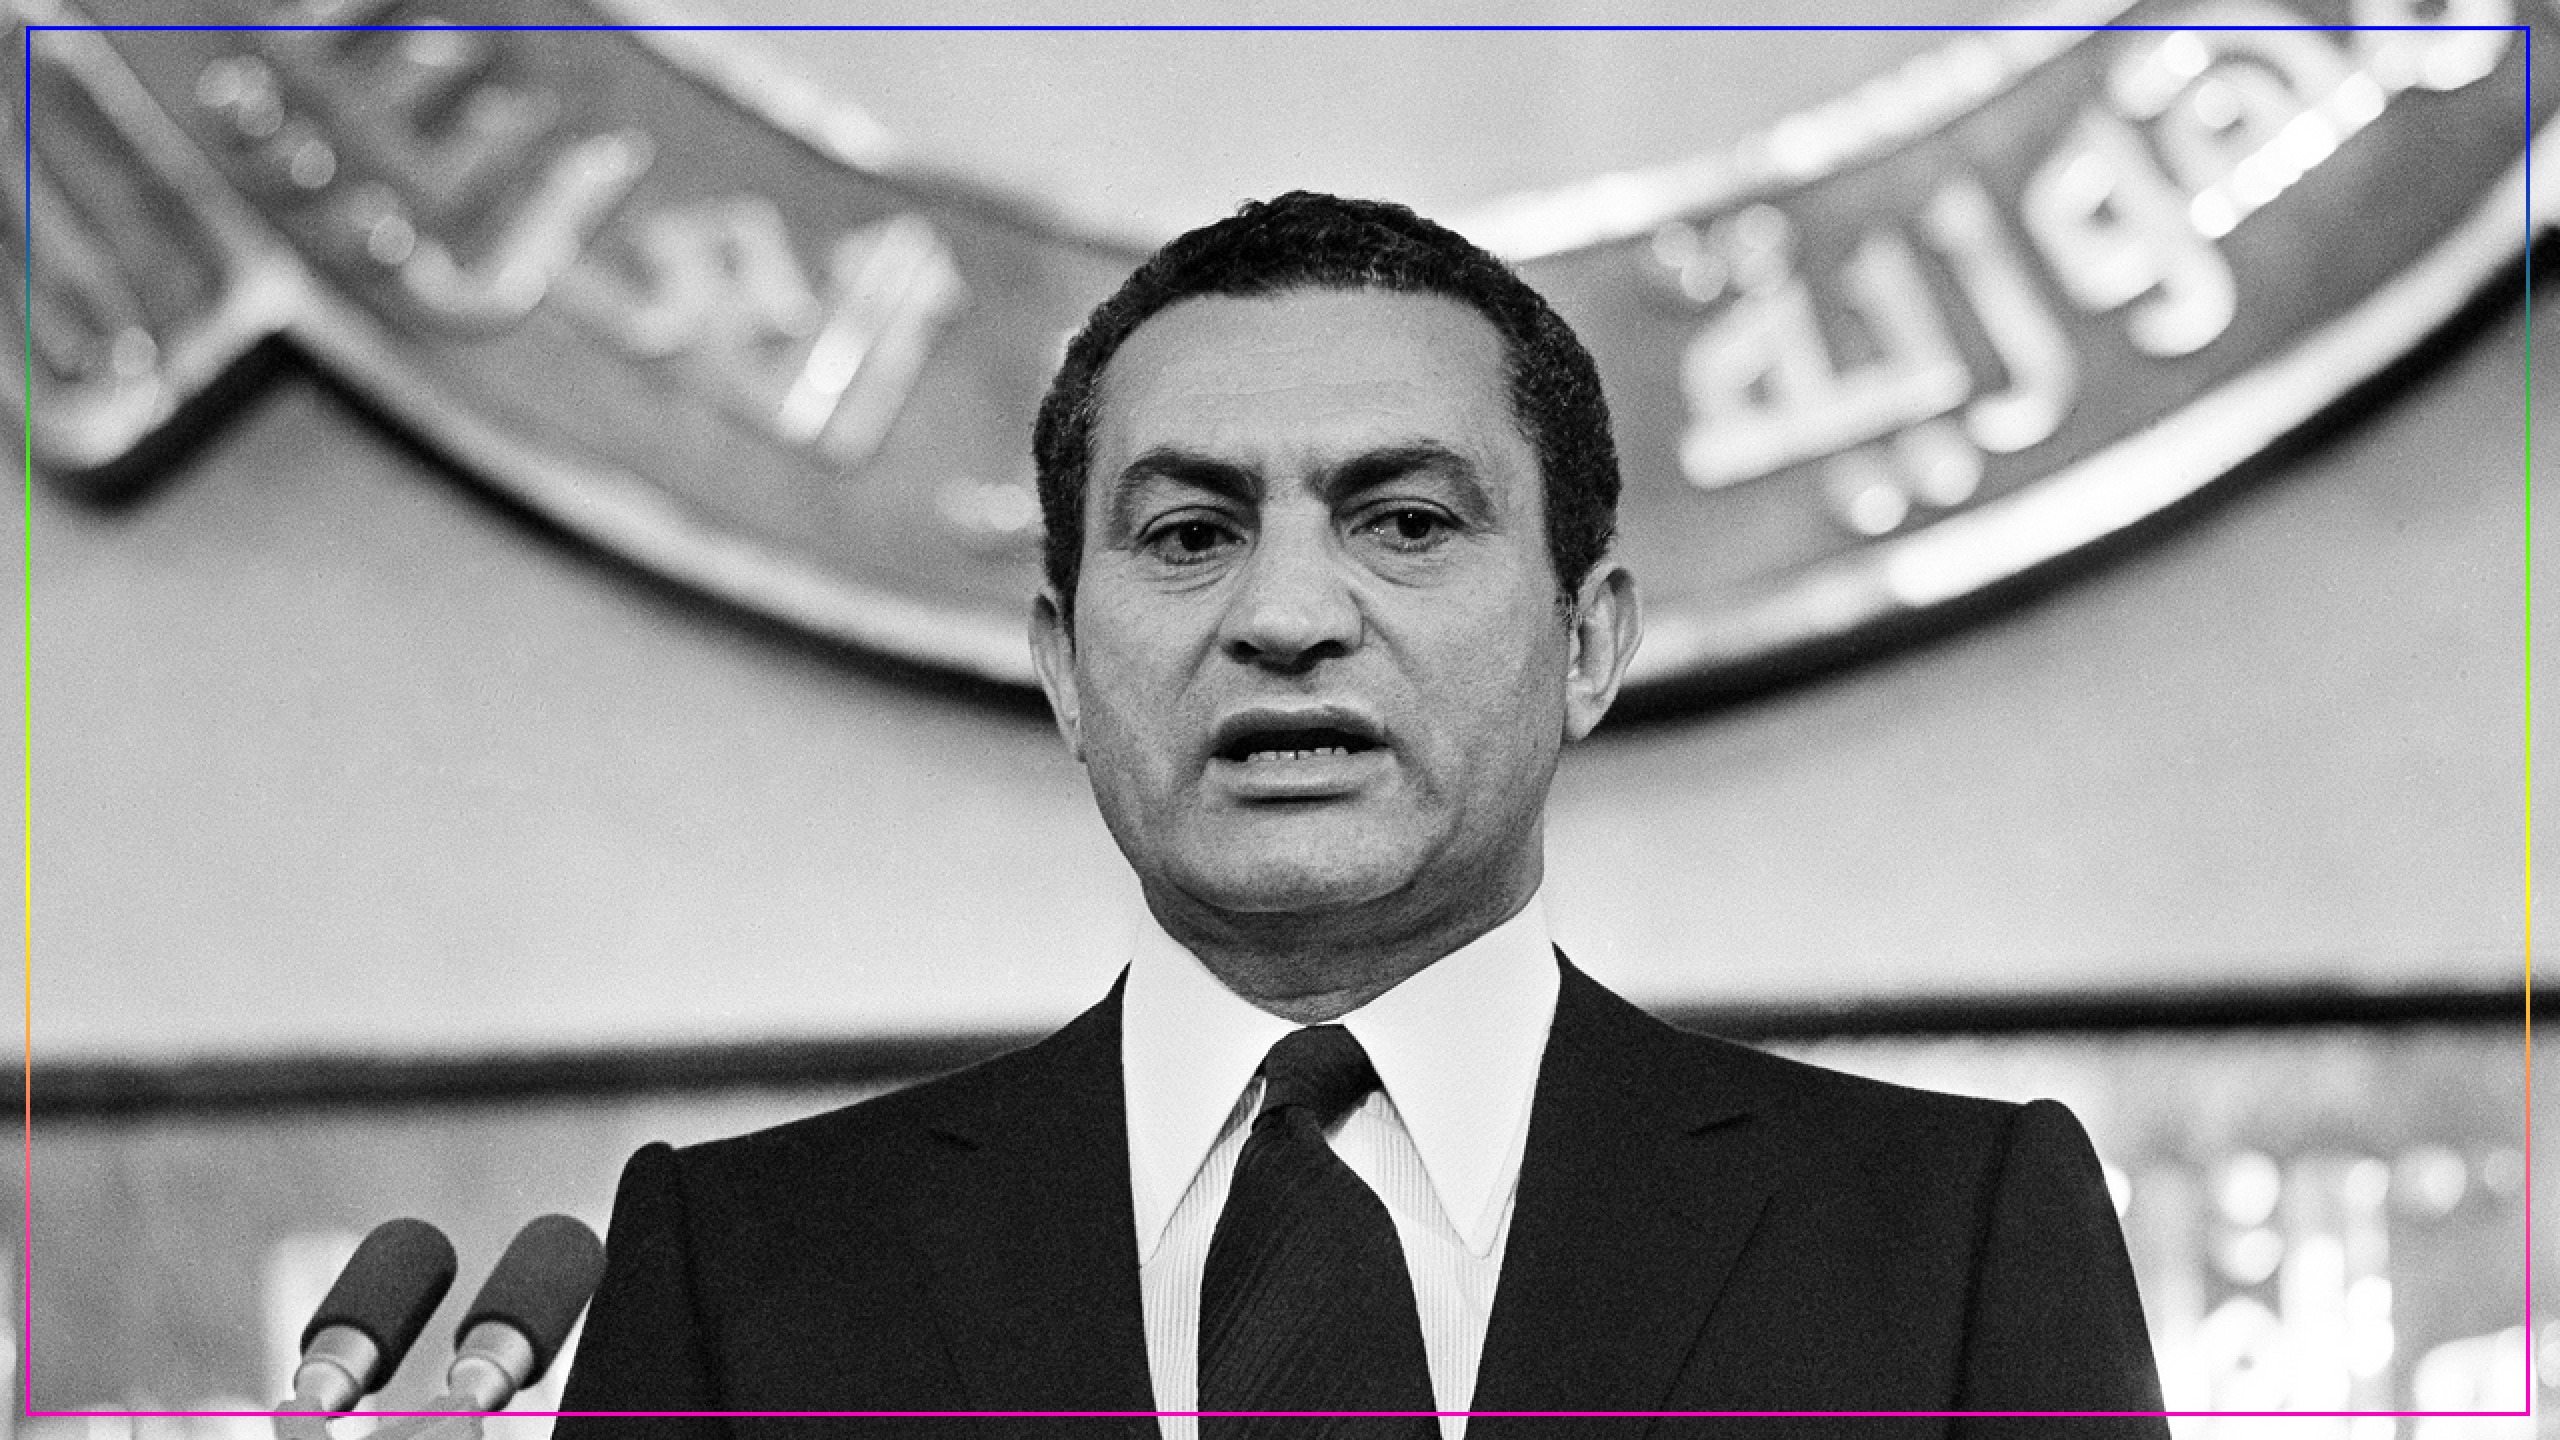 Хосни Мубарак во время принятия присяги, 1981. Источник: AP Photo